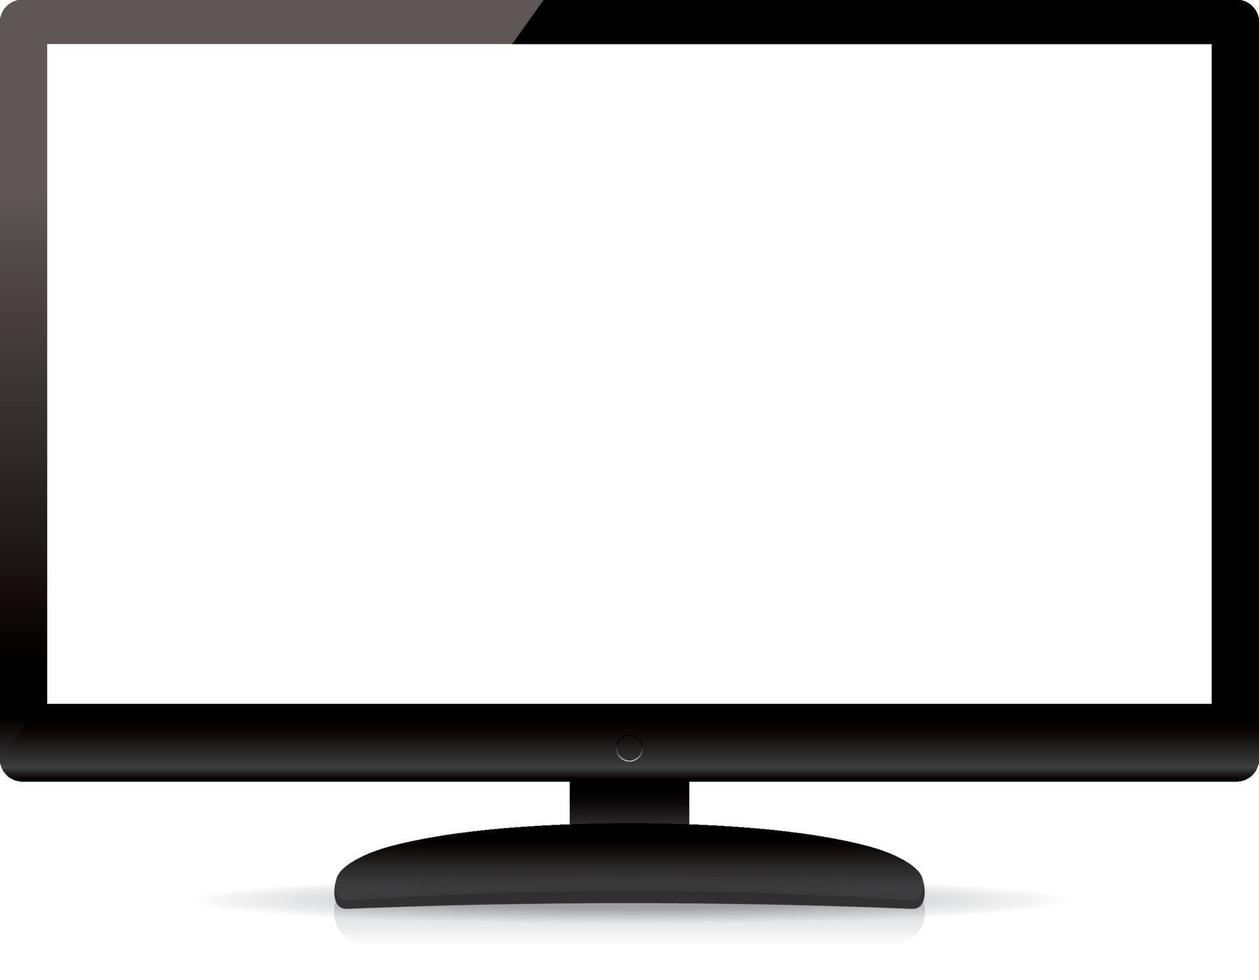 Tv de pantalla plana en blanco moderno aislado sobre fondo blanco. vector